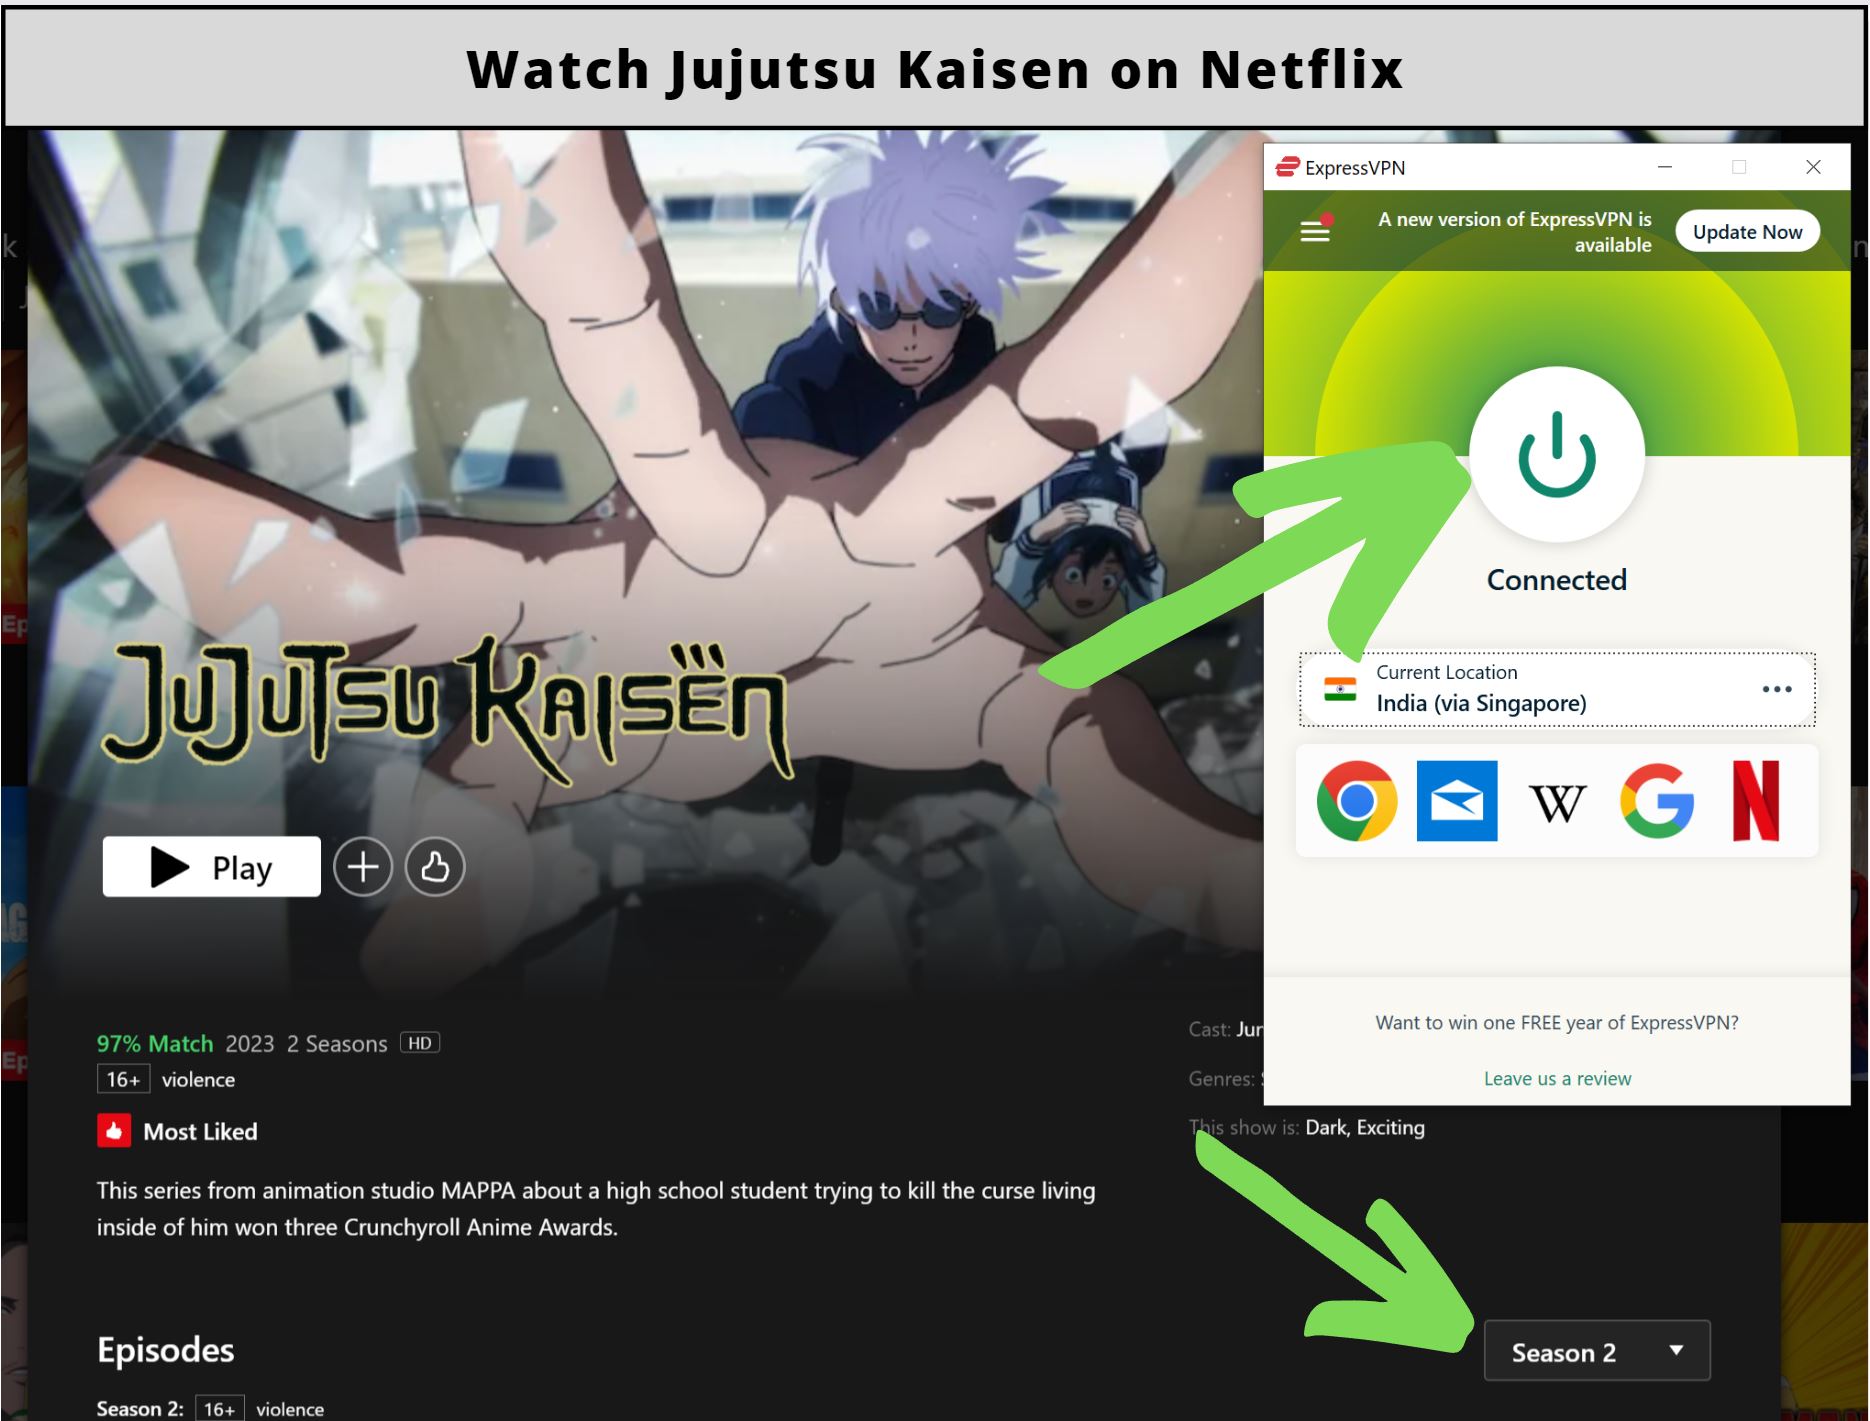 Is Jujutsu Kaisen Season 2 on Netflix?